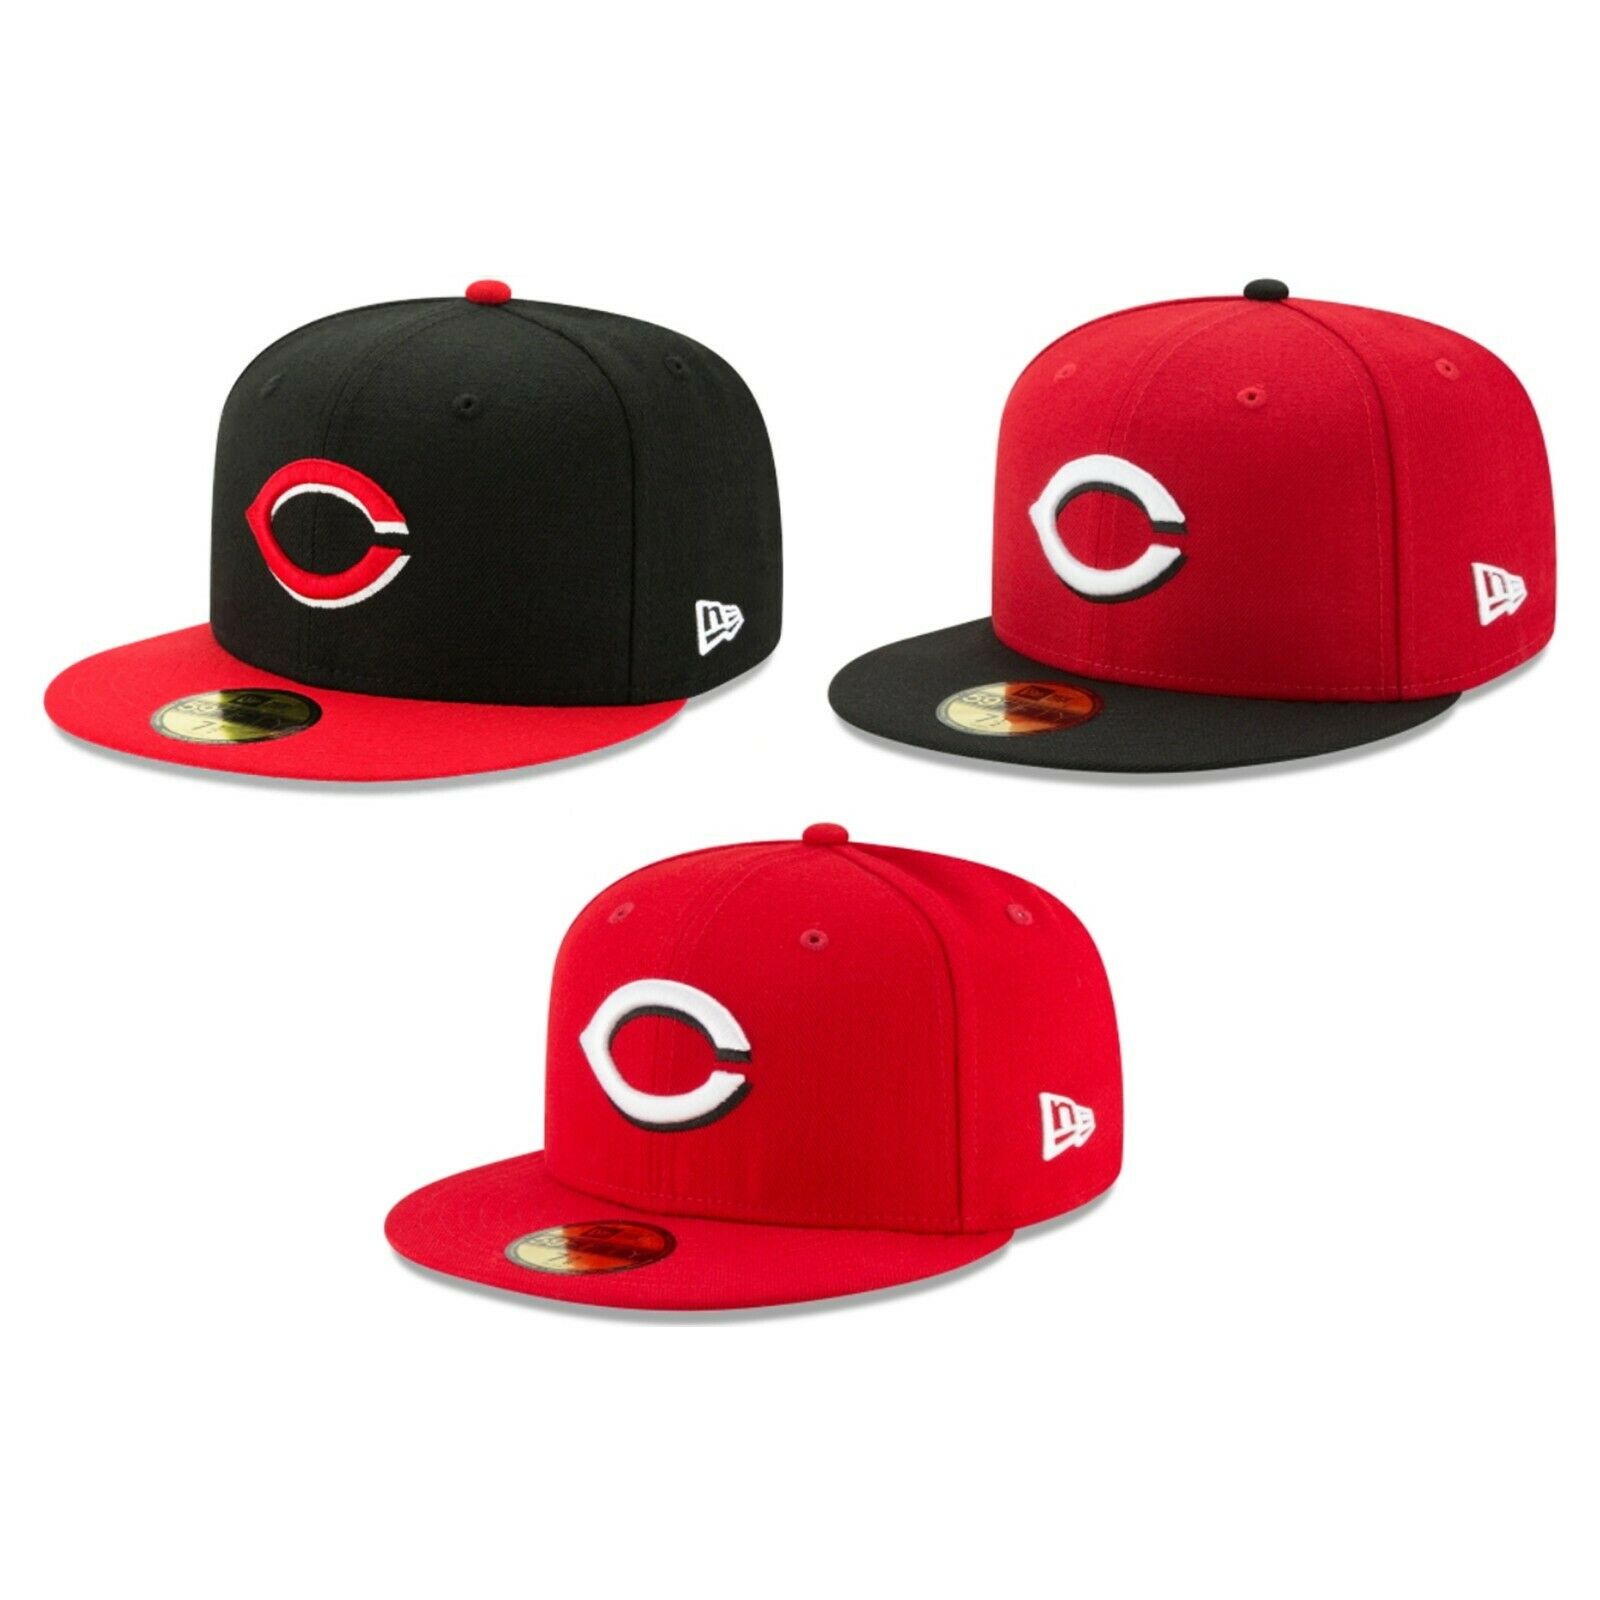 Cincinnati Reds Cin Mlb Authentic New Era 59fifty Fitted Cap - 5950 Hat Cap